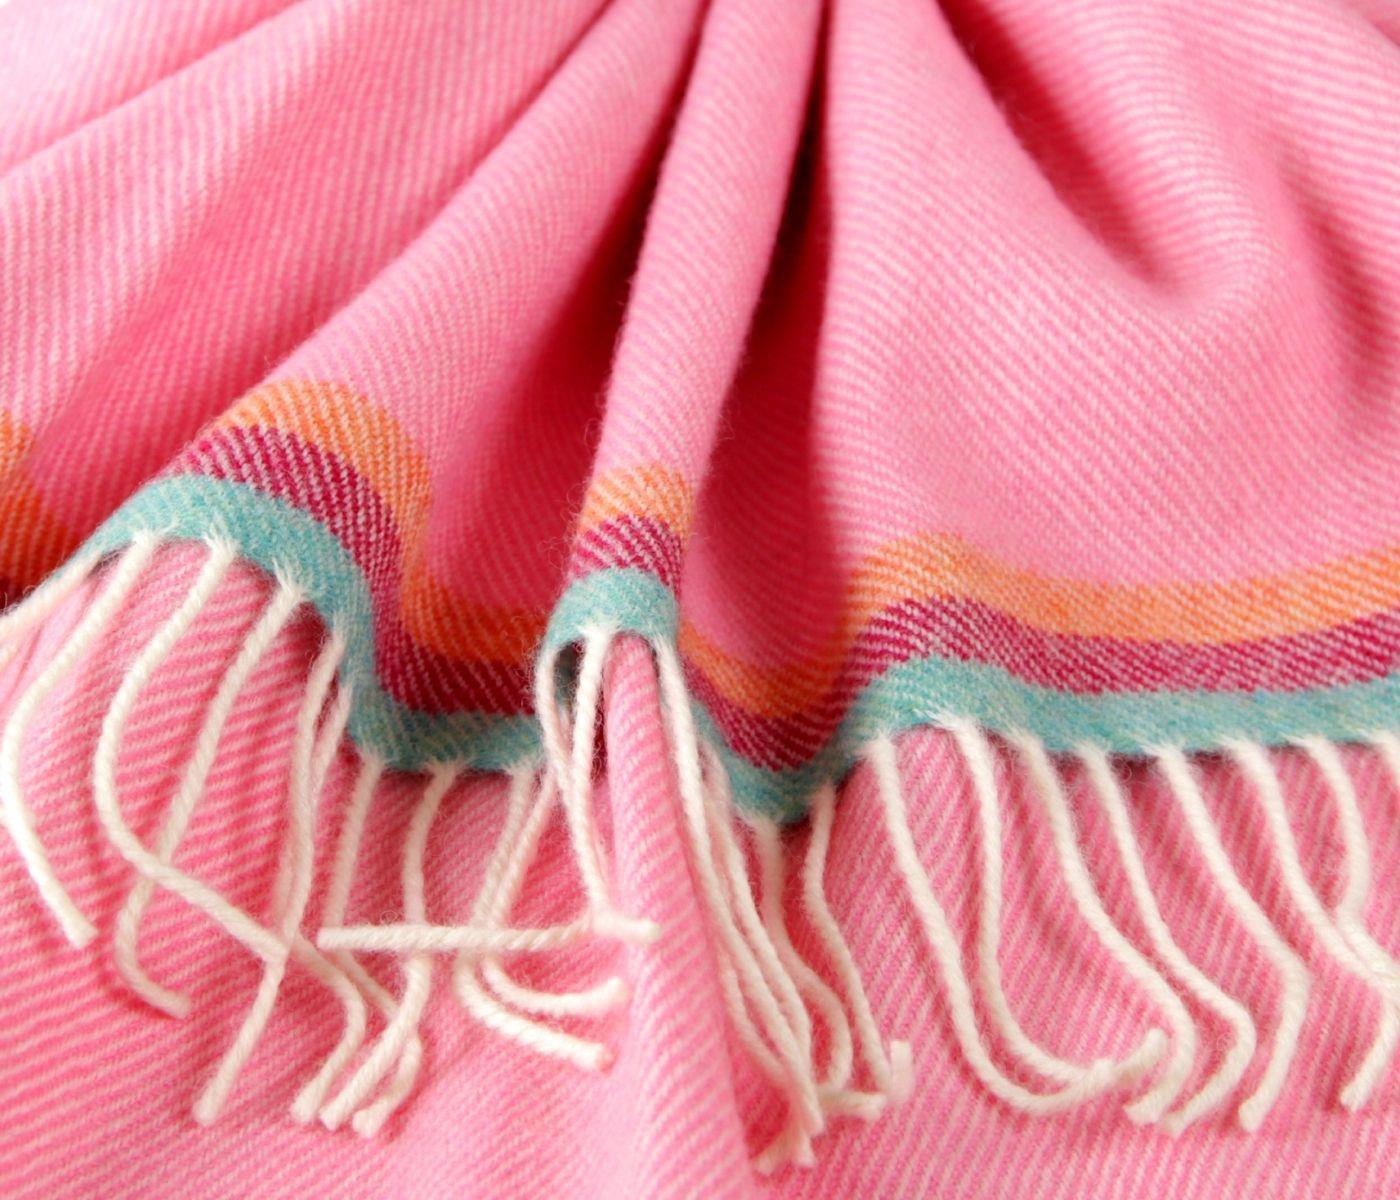 McNutt Babydecke aus 100% Wolle (Merino) in pink mit bunten Streifen 104 x 67 cm